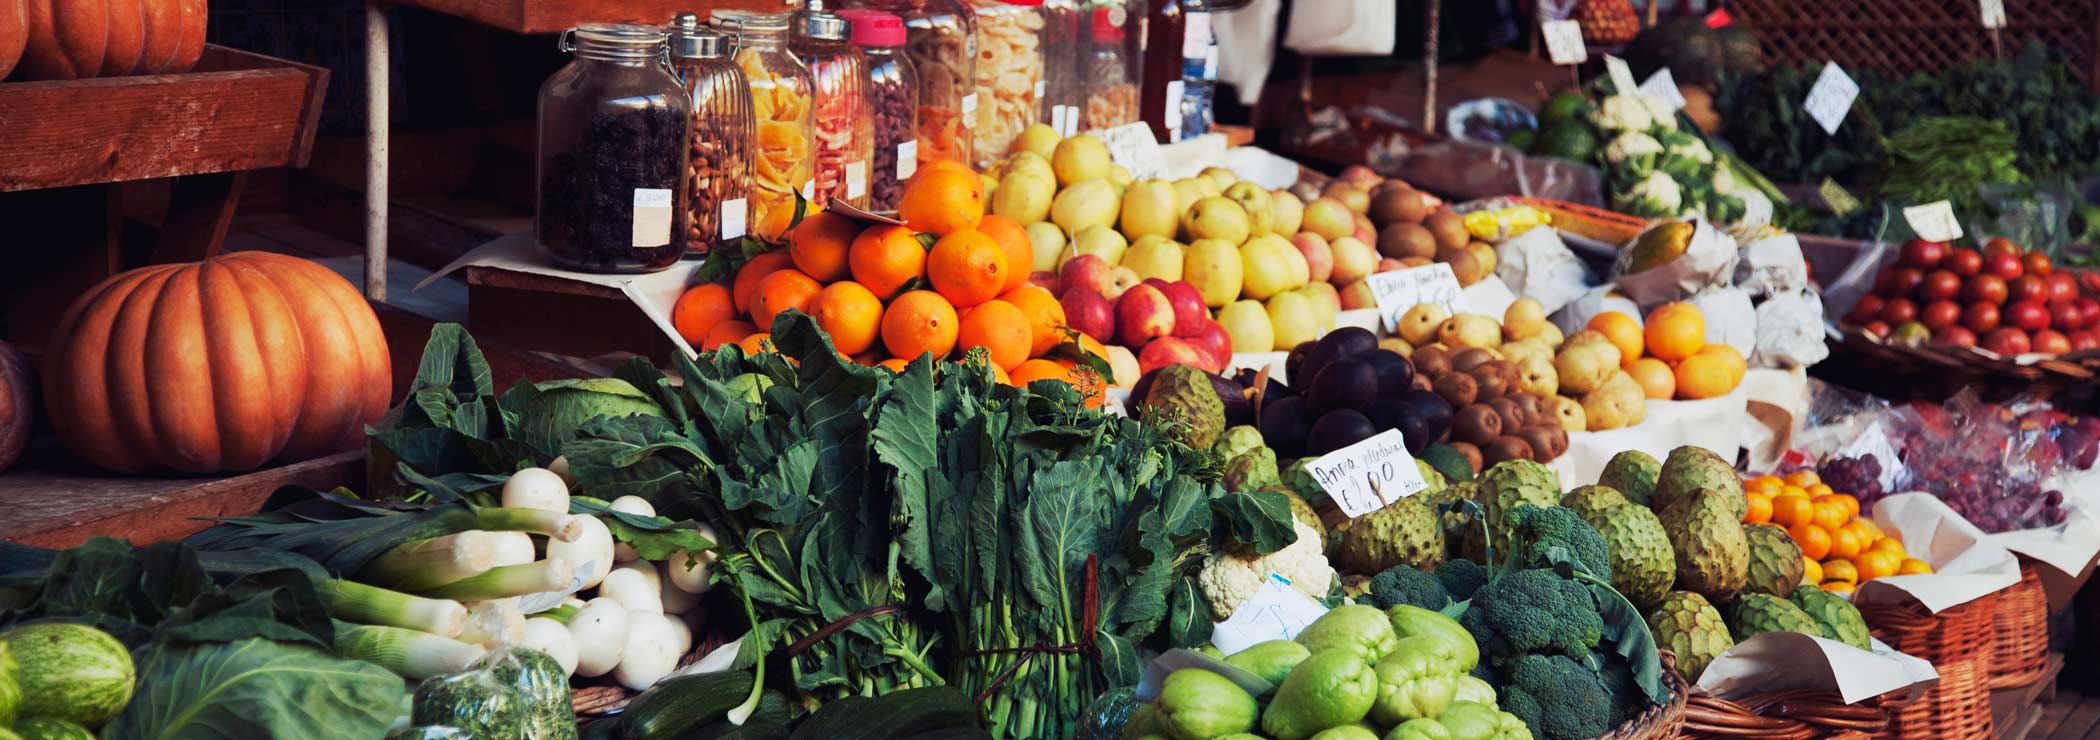 Marktstand mit tropischen Früchten und Gemüsen